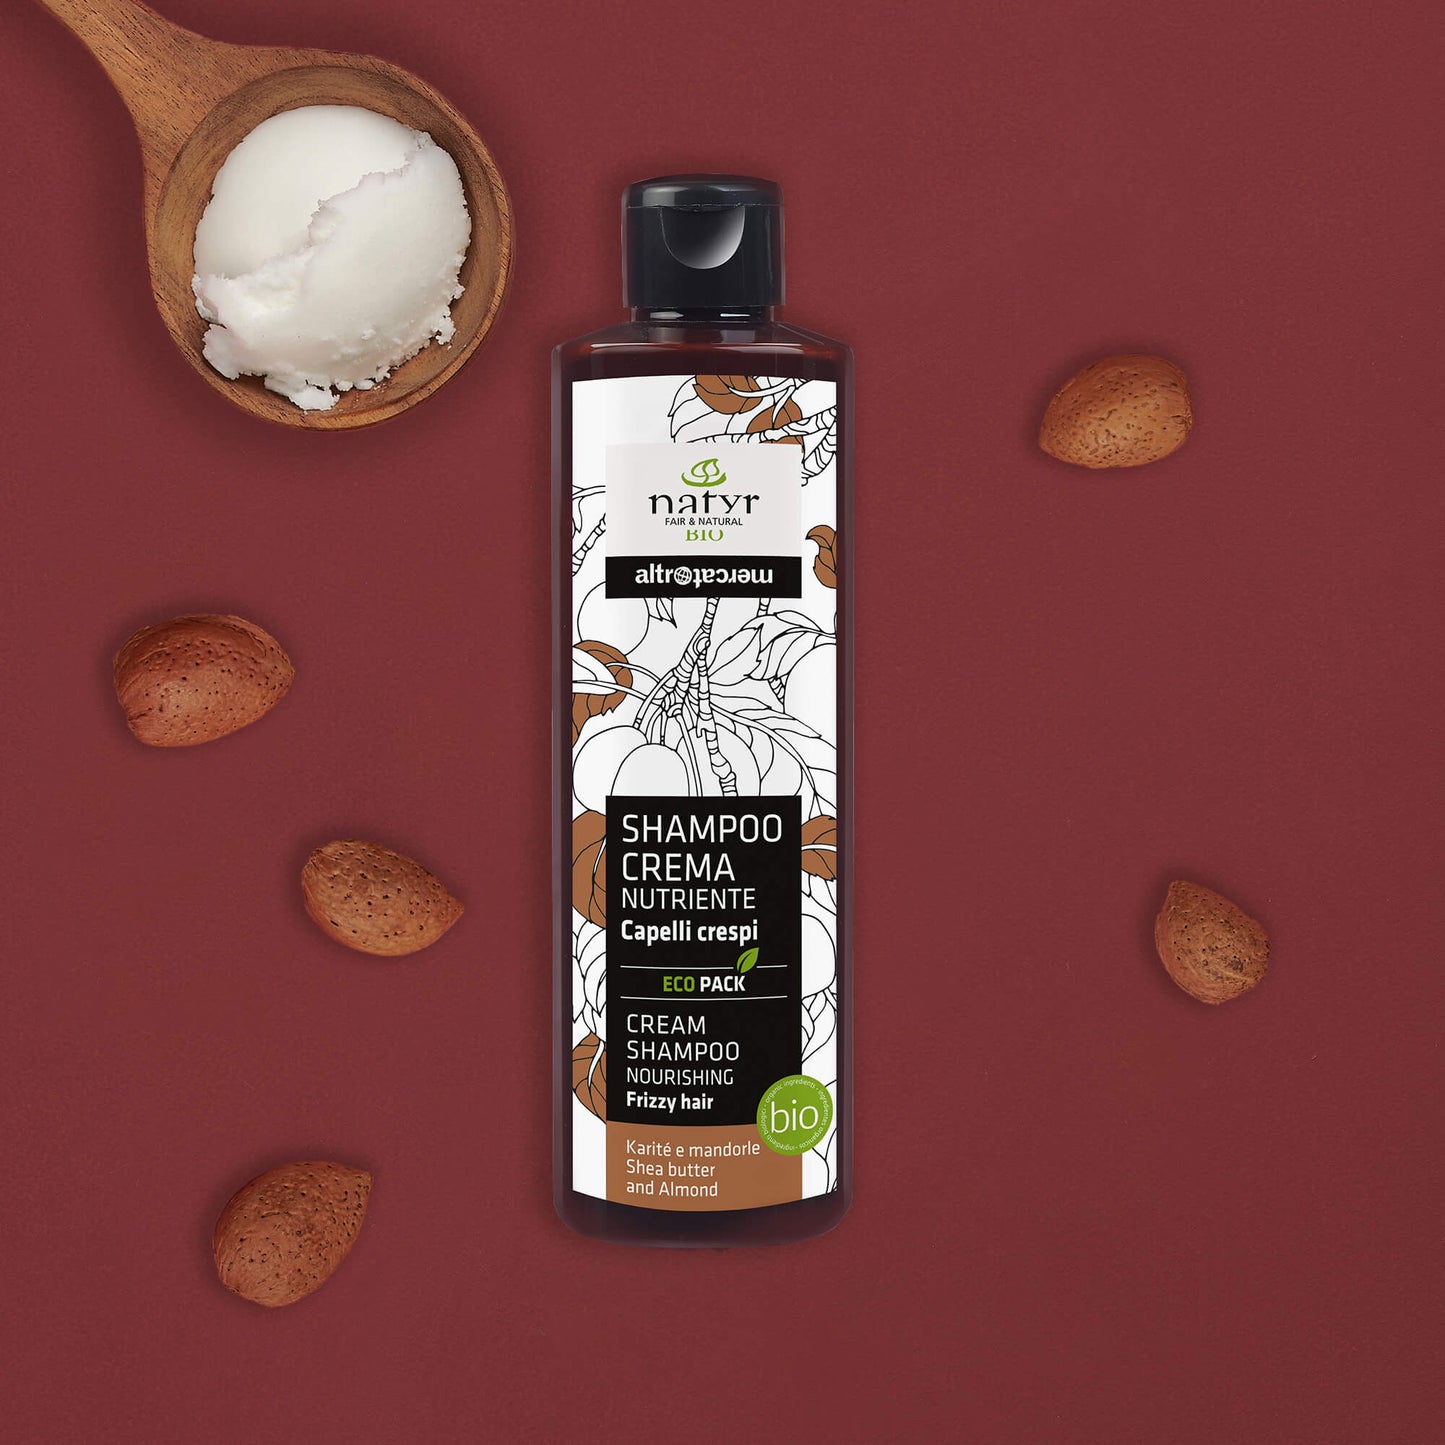 Shampoo crema - Karitè e mandorle - nutriente - bio | 200 ml